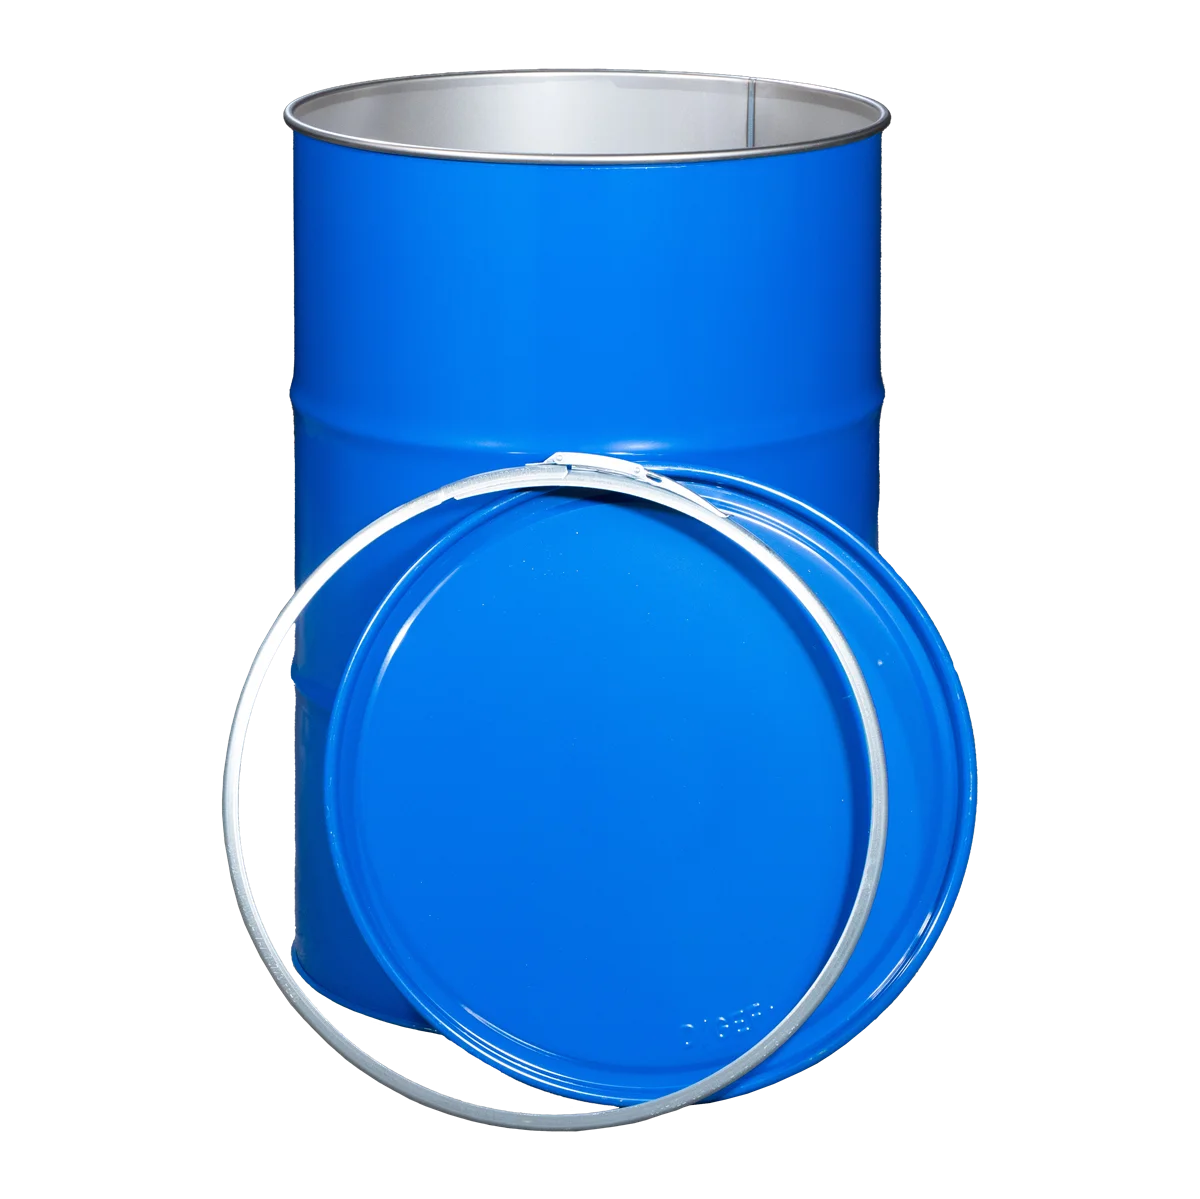 Stahldeckelfass 213l roh mit UN-XY Zulassung für Flüssigkeiten und Feststoffe